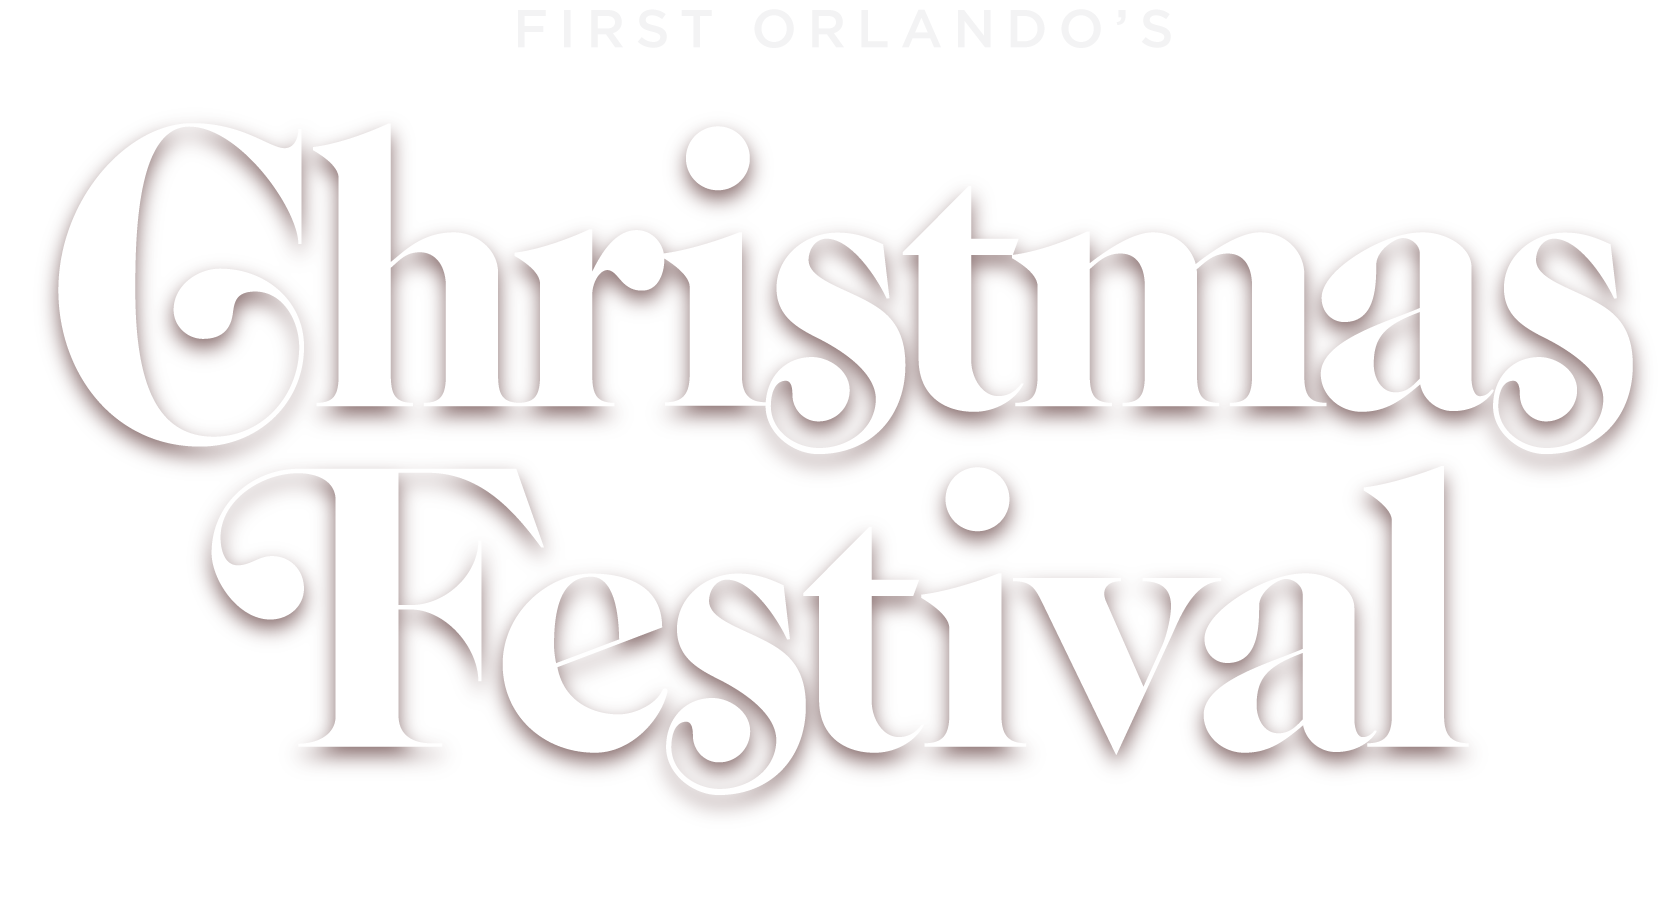 First Orlando's Christmas Festival